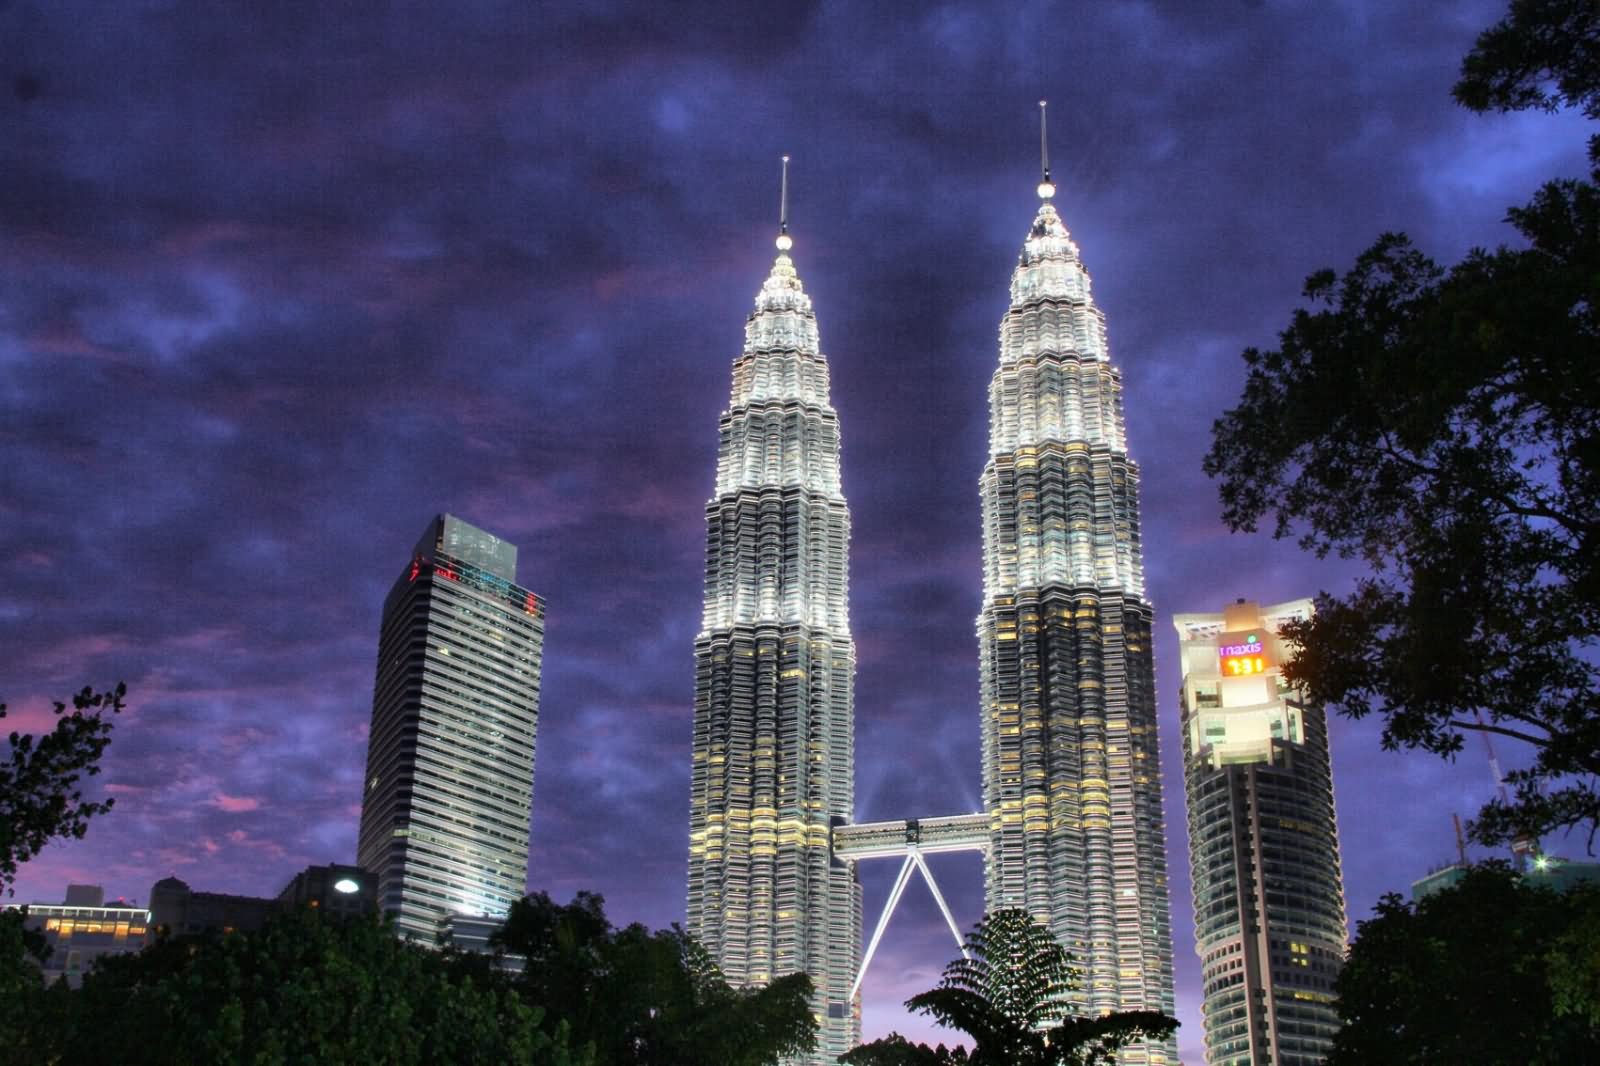 The Petronas Towers At Night